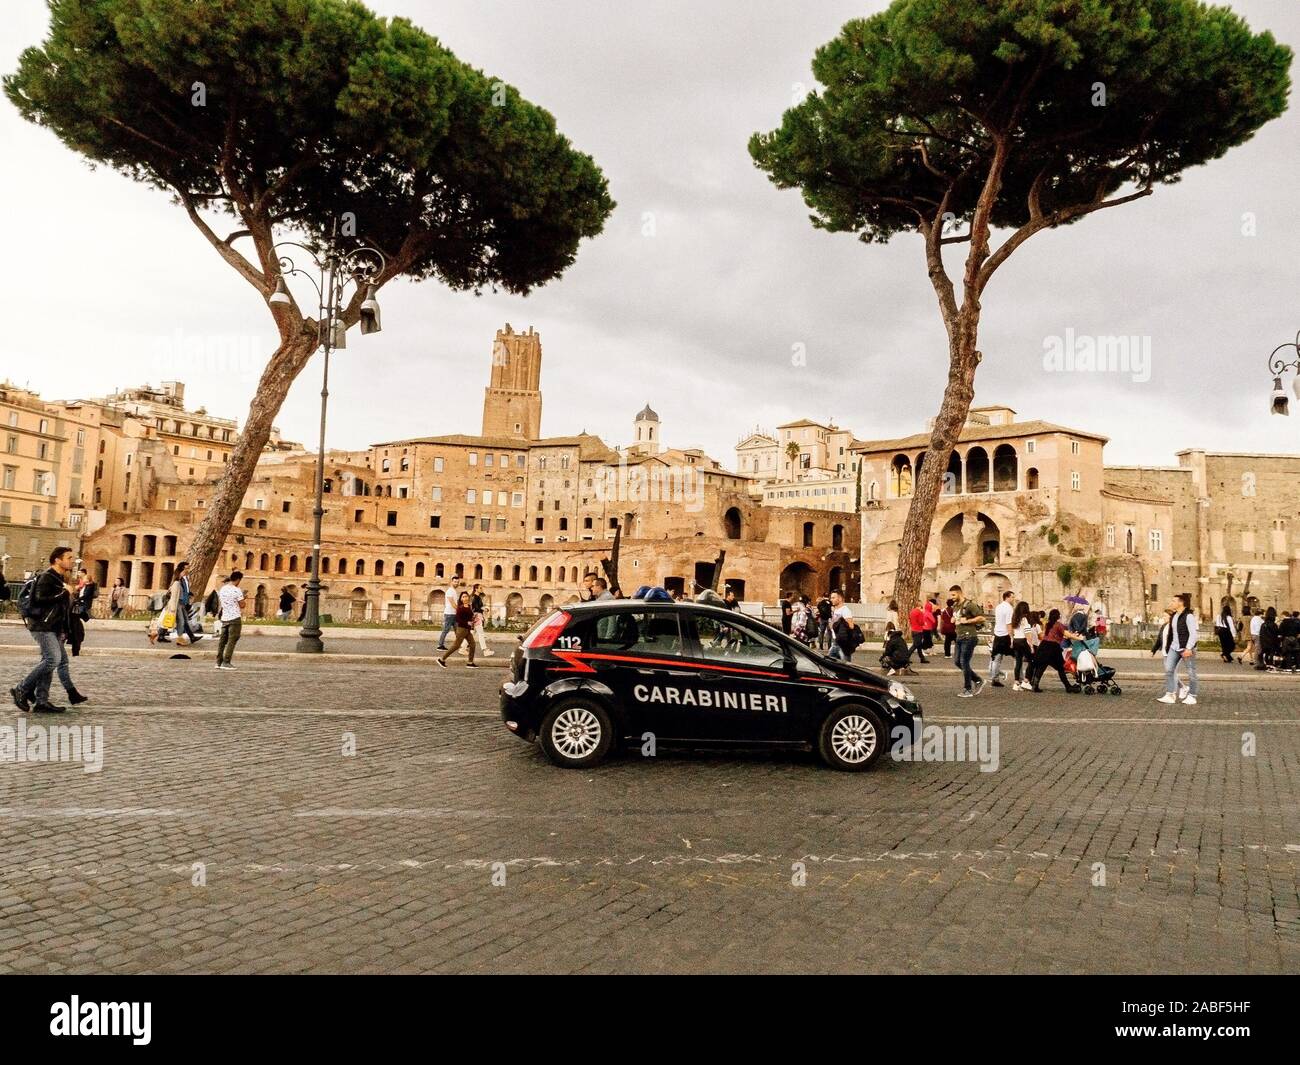 Rome, Italy - November 1, 2019: carabinieri car is on road near Trajan's market Stock Photo